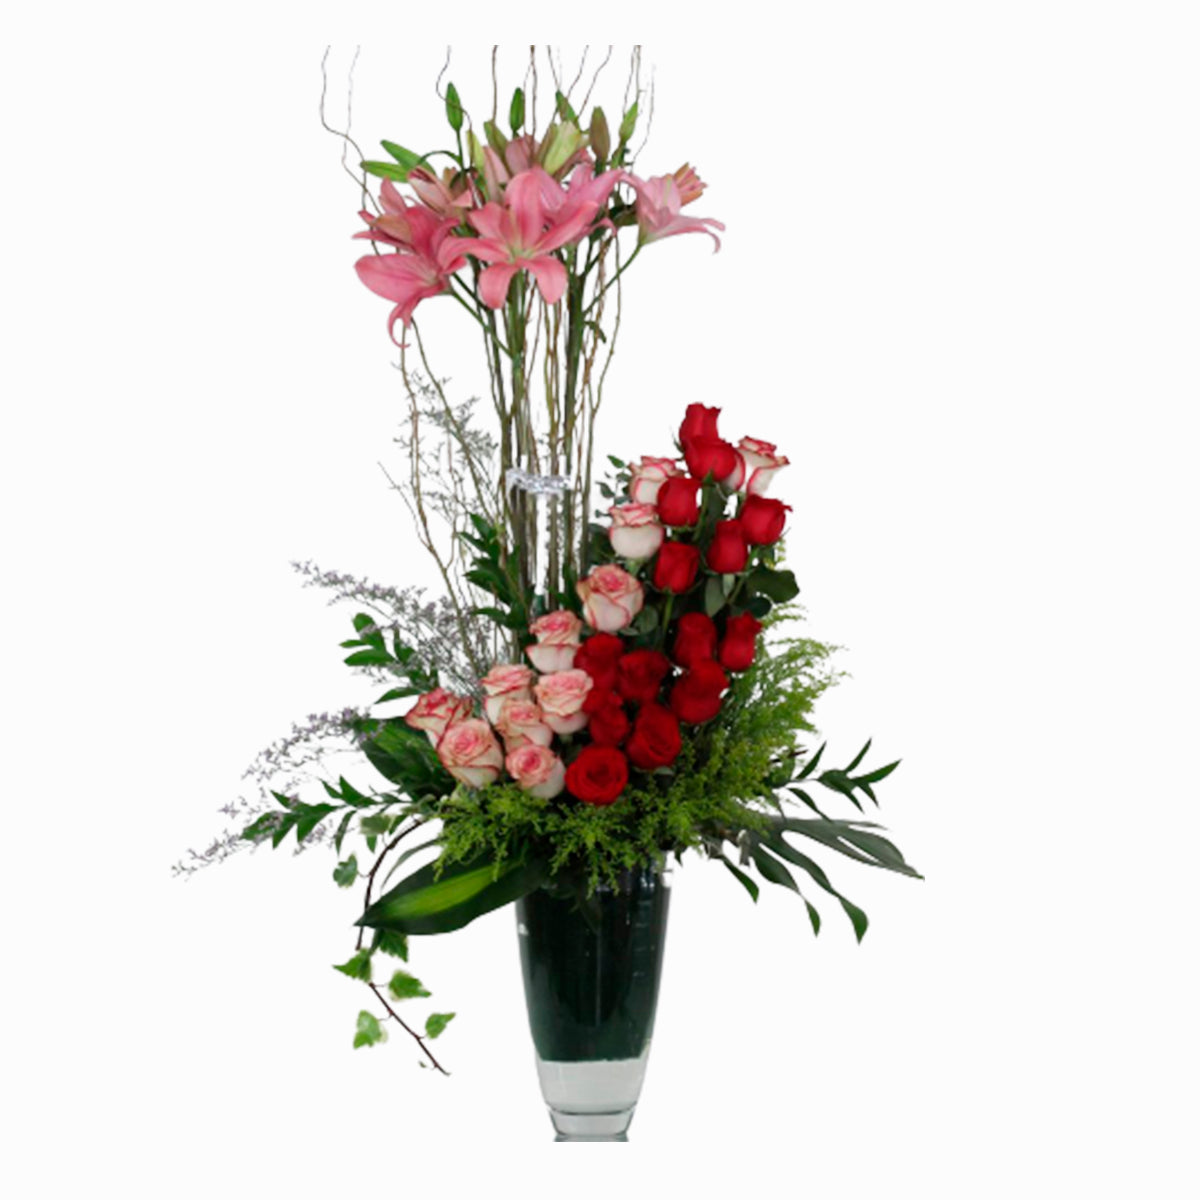 Rosas y lilis especial en florero cristal – Floreria del Valle